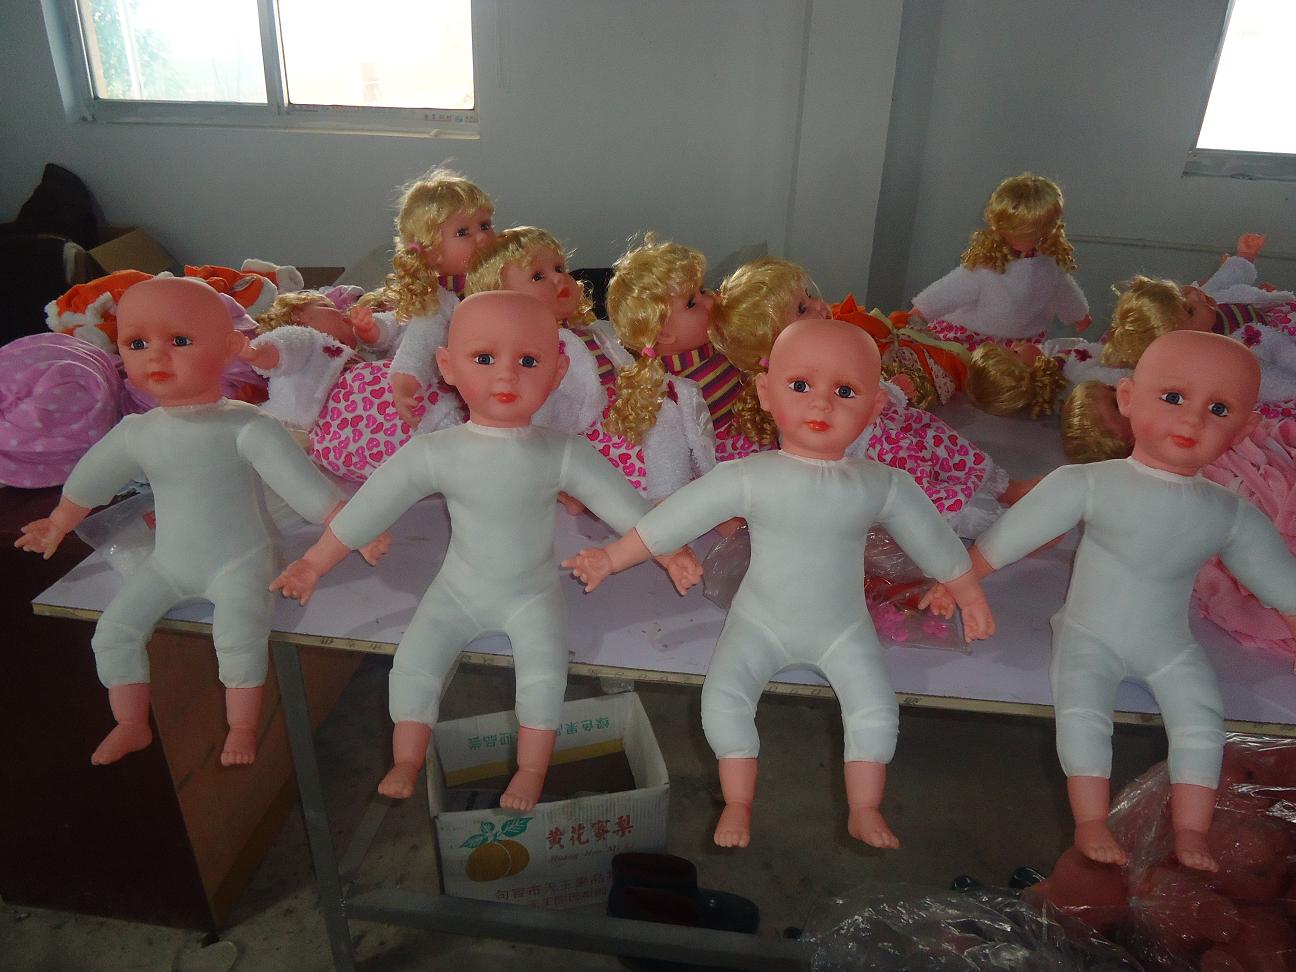 塑料娃娃-价格:20元-au25586743-其他传统玩具 -加价-7788收藏__收藏热线